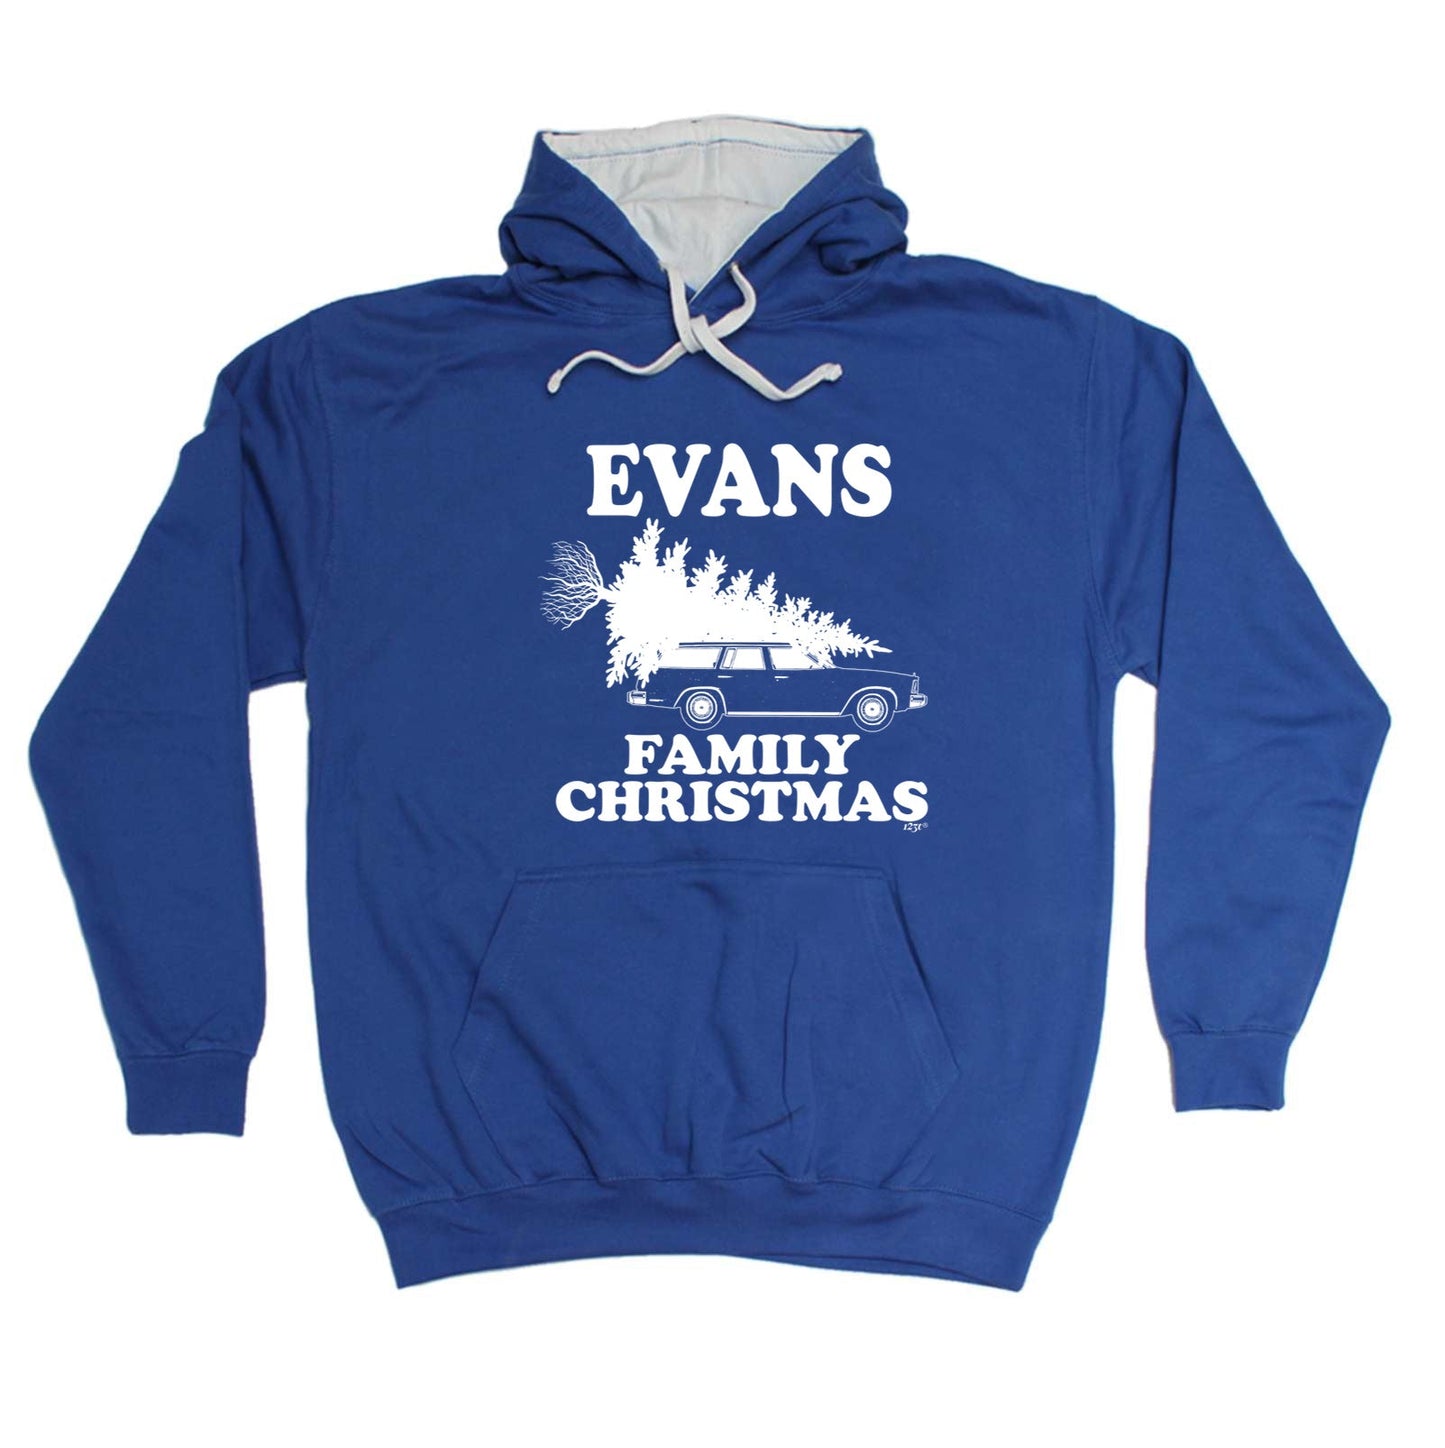 Family Christmas Evans - Xmas Novelty Hoodies Hoodie